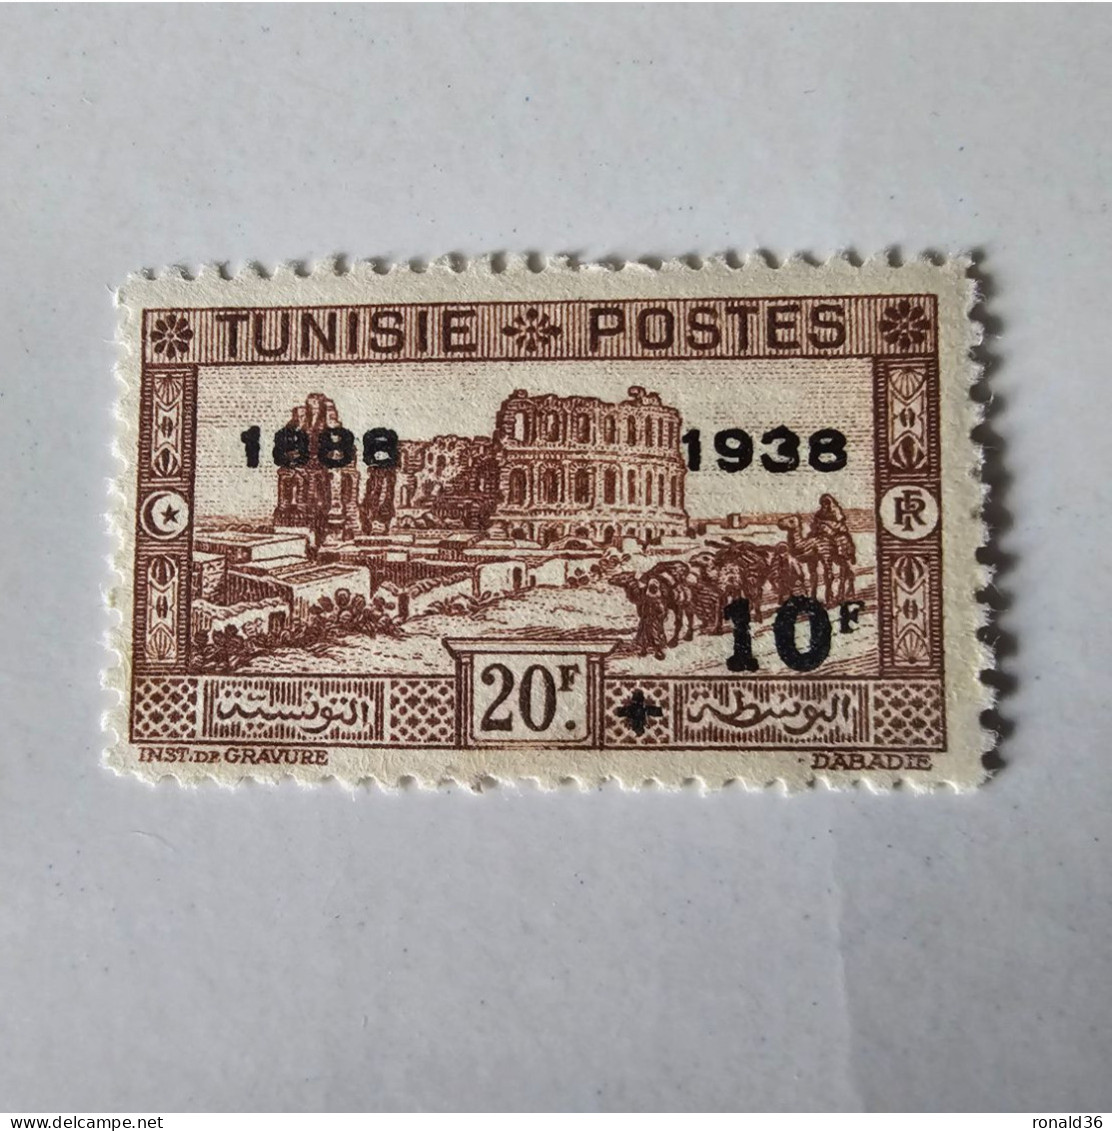 TUNISIE POSTES N° 204 Marron 10 Francs Noir  20 F 1888 1938 FRANCE Timbre Francais Ex Colonie Française Protectorat - Neufs